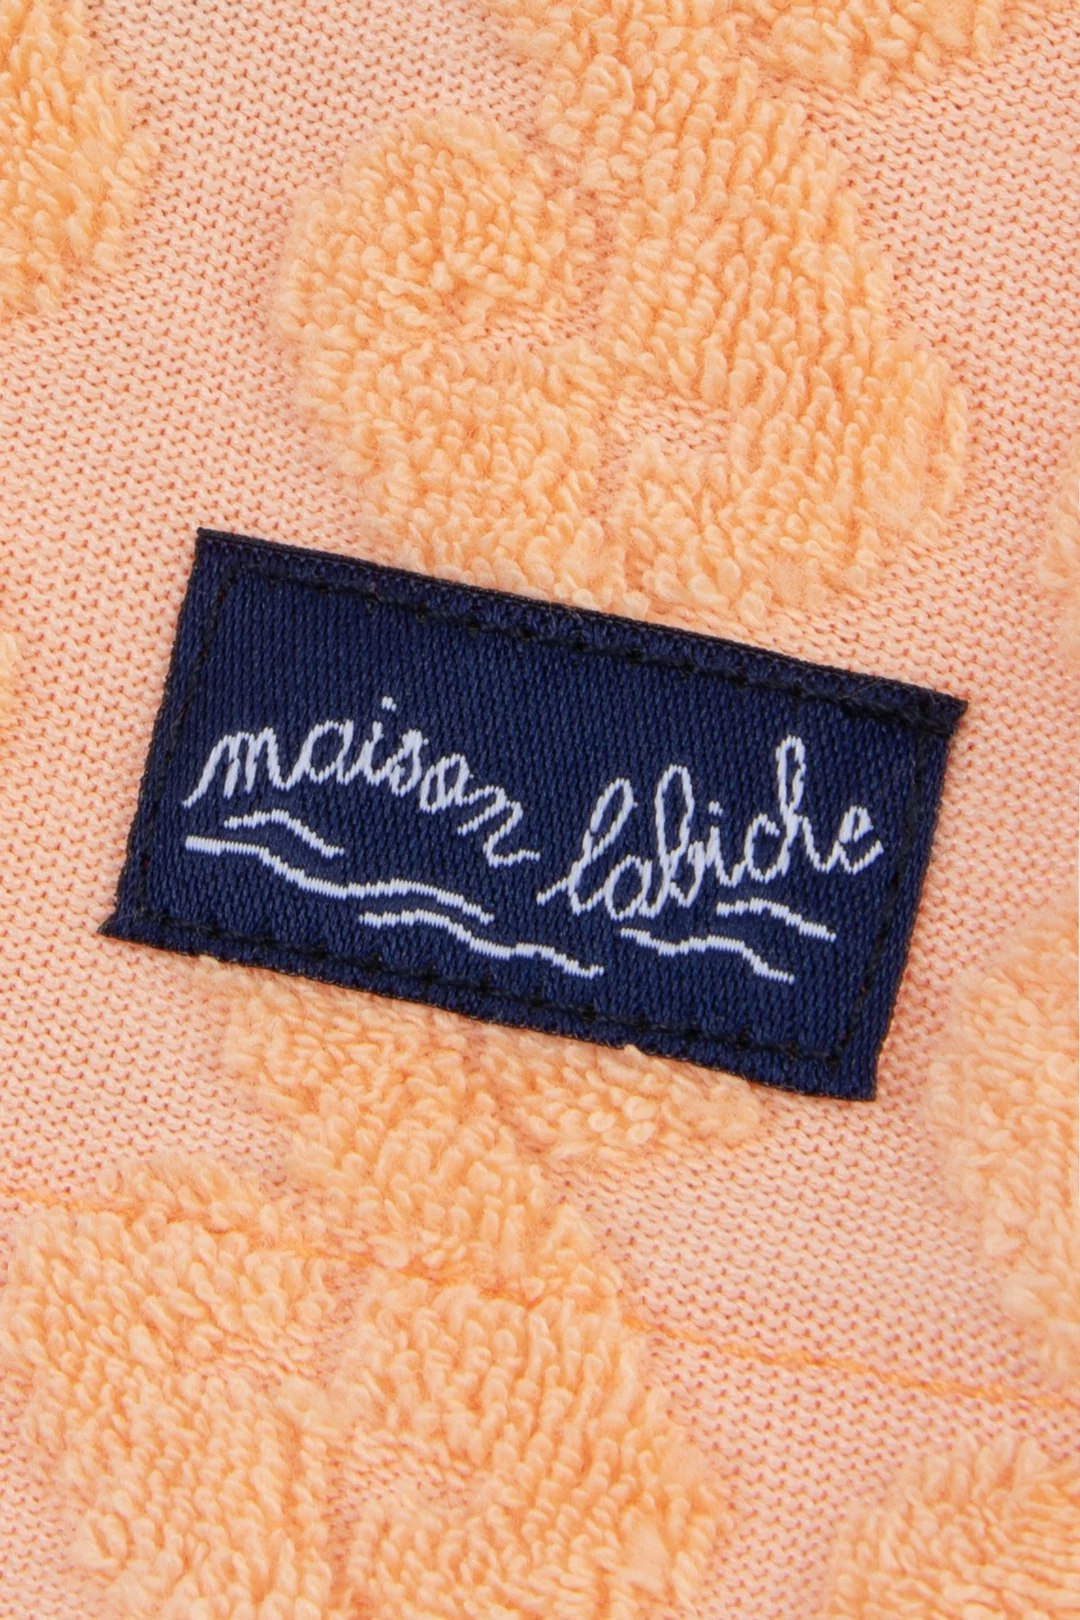 Maison Labiche - Devoured Terry Cloth Germain Shirt, Melon